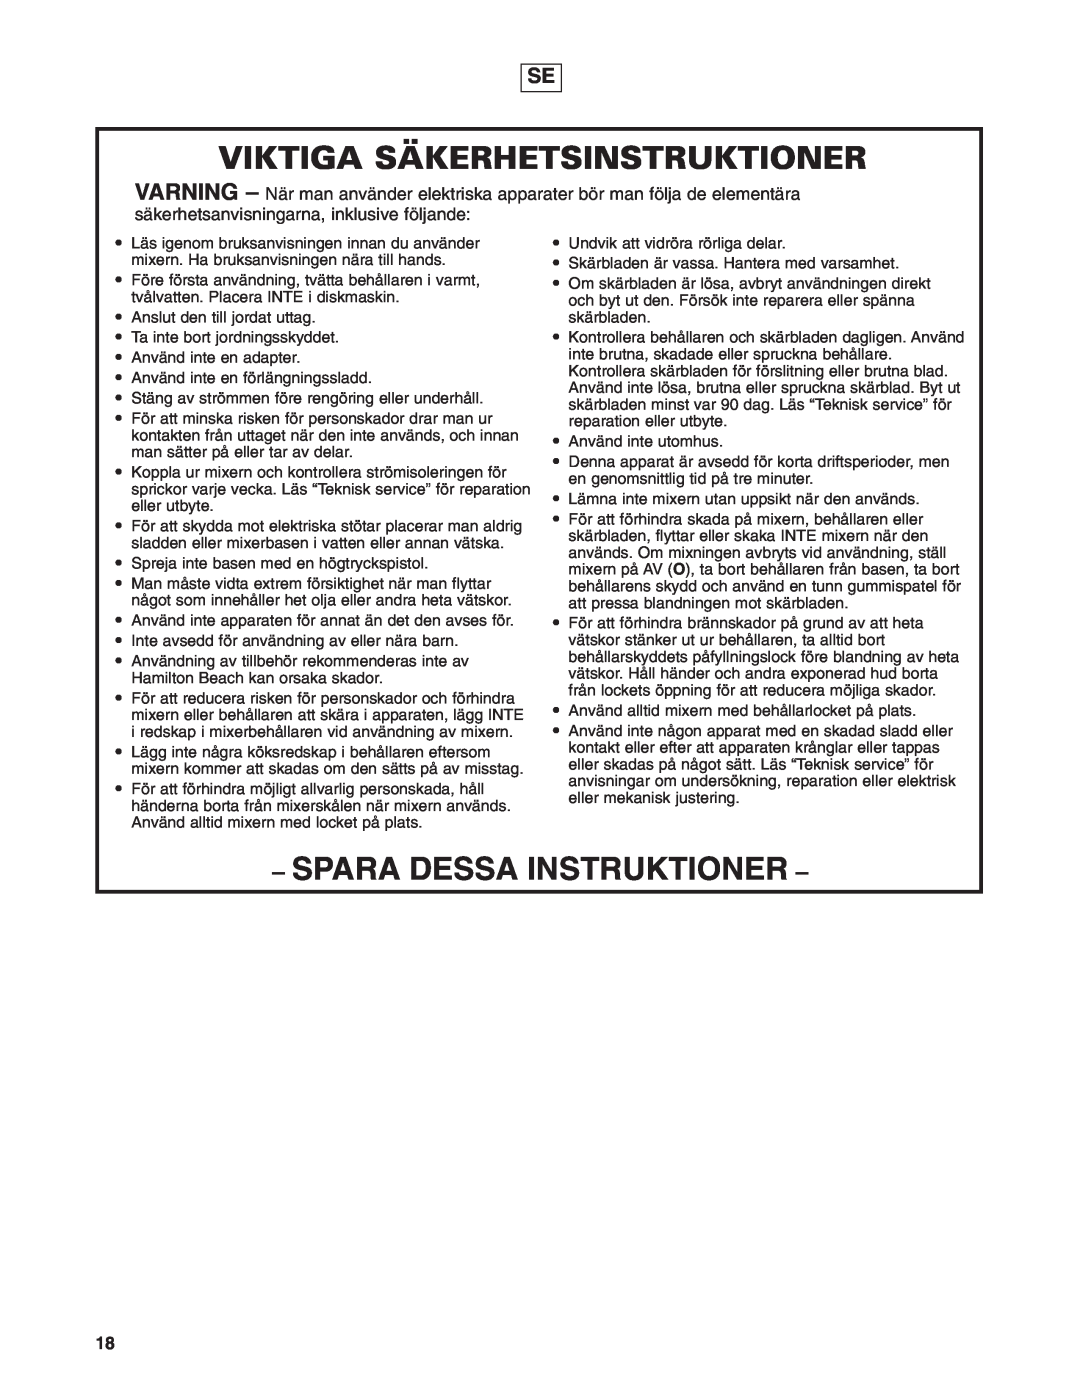 Hamilton Beach 908 Series operation manual Viktiga Säkerhetsinstruktioner, Spara Dessa Instruktioner 